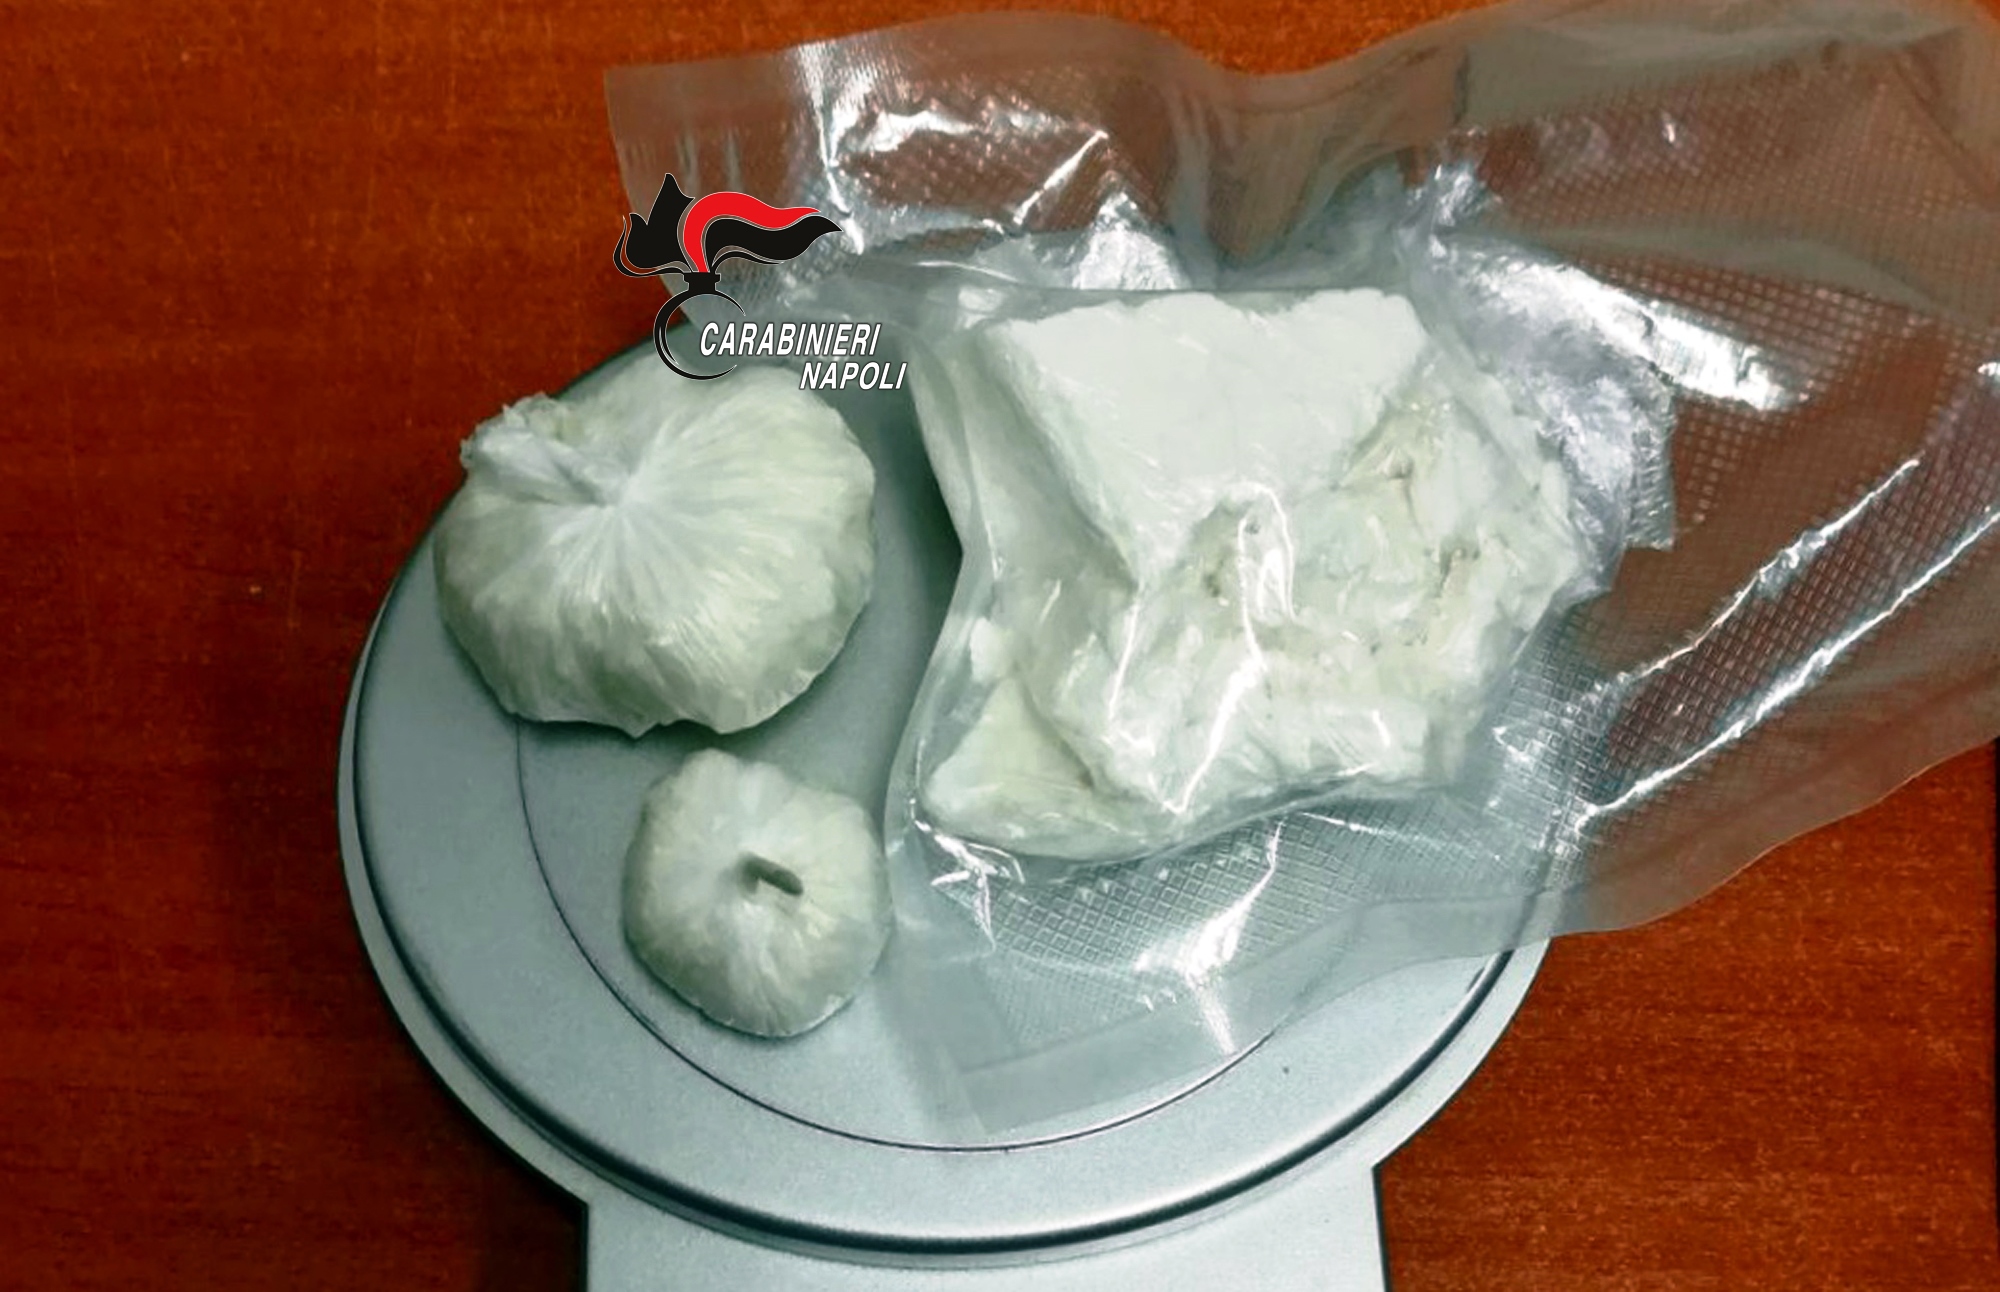  Ponticelli, carabinieri arrestano 35enne sorpresa in auto con 160 grammi di cocaina pura